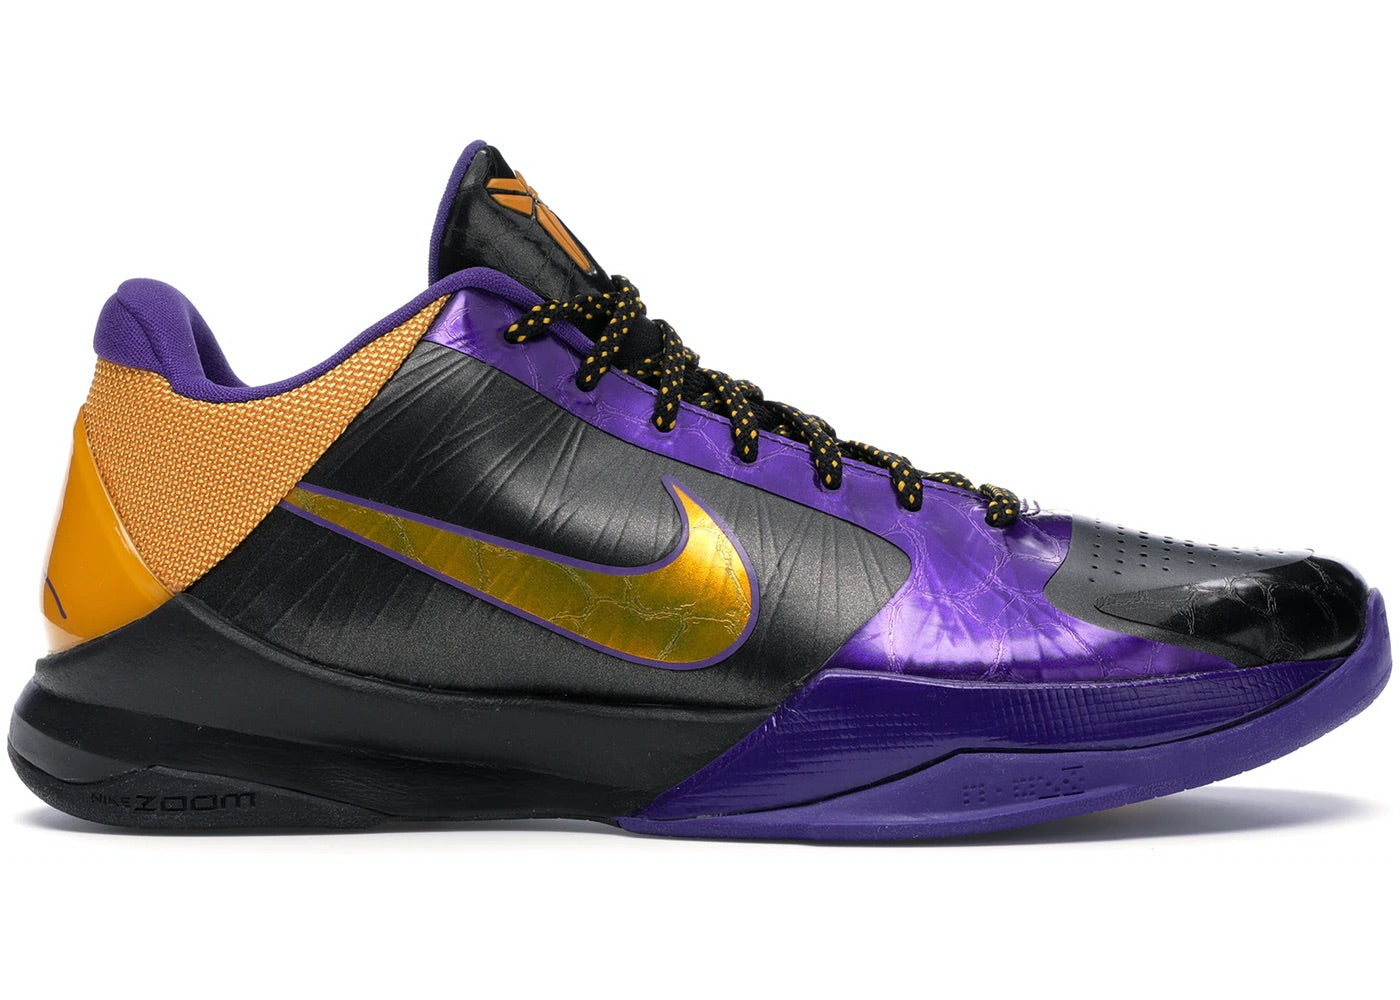 Nike Kobe 5 "Lakers" GS (USED) (REP BOX)